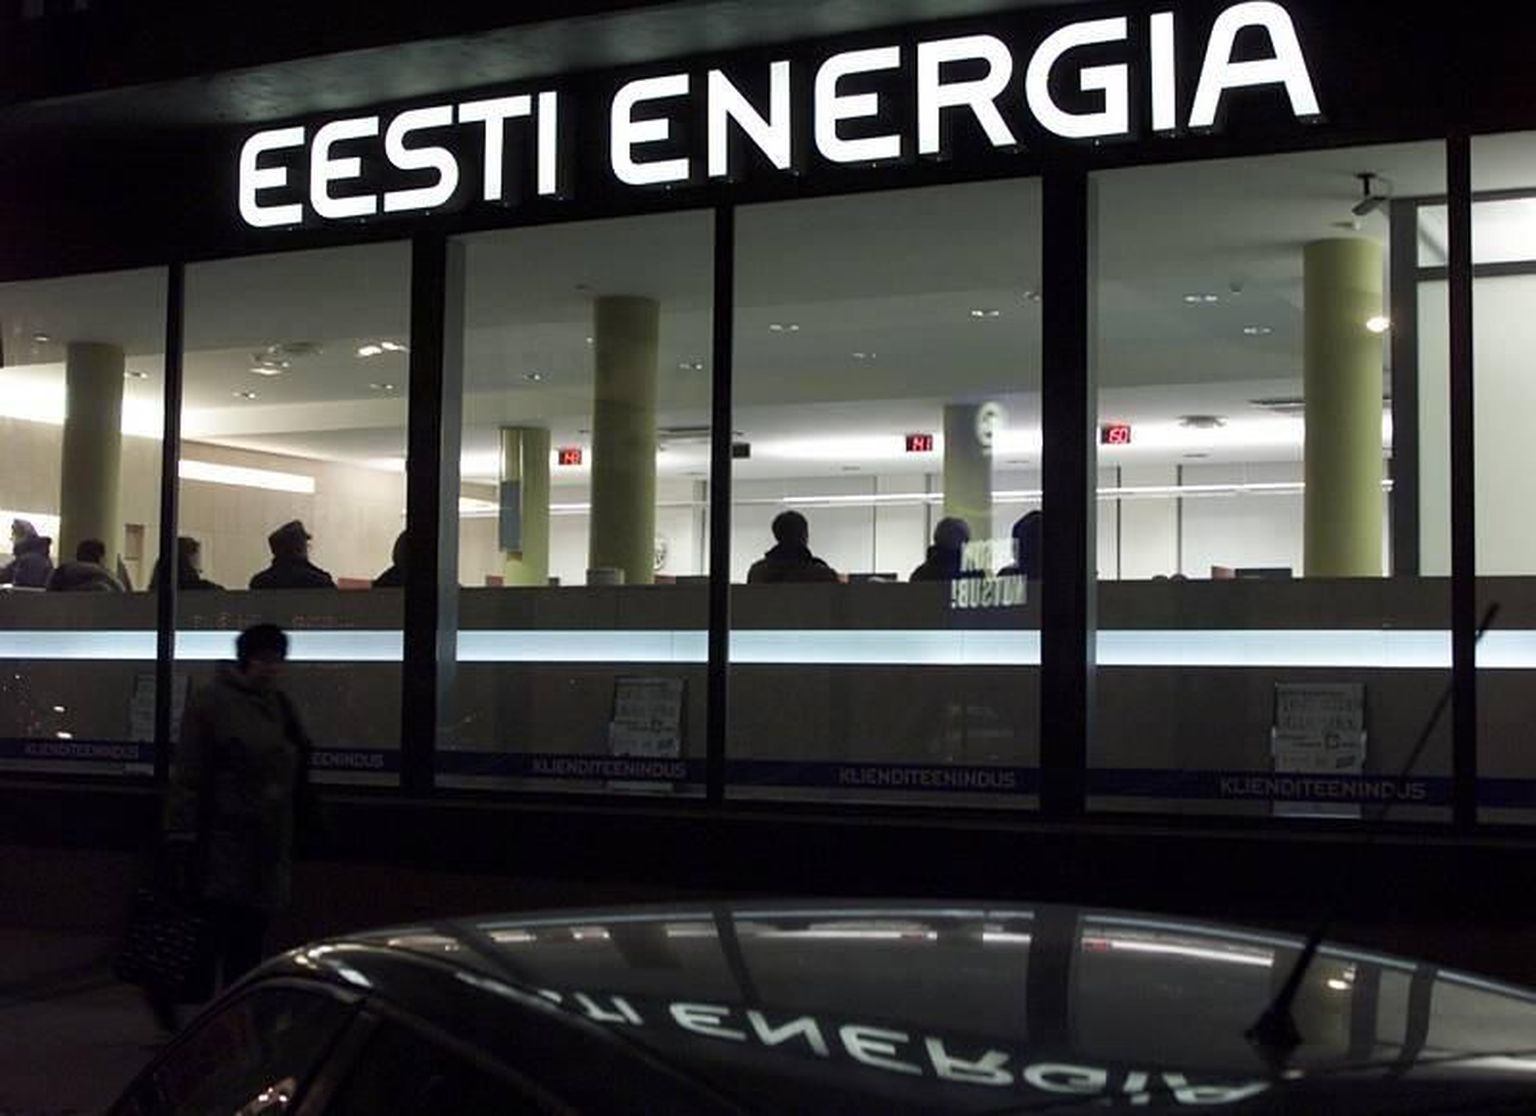 Kehv energiaturu olukord päästis Eesti Energia riigile dividendide maksmisest.